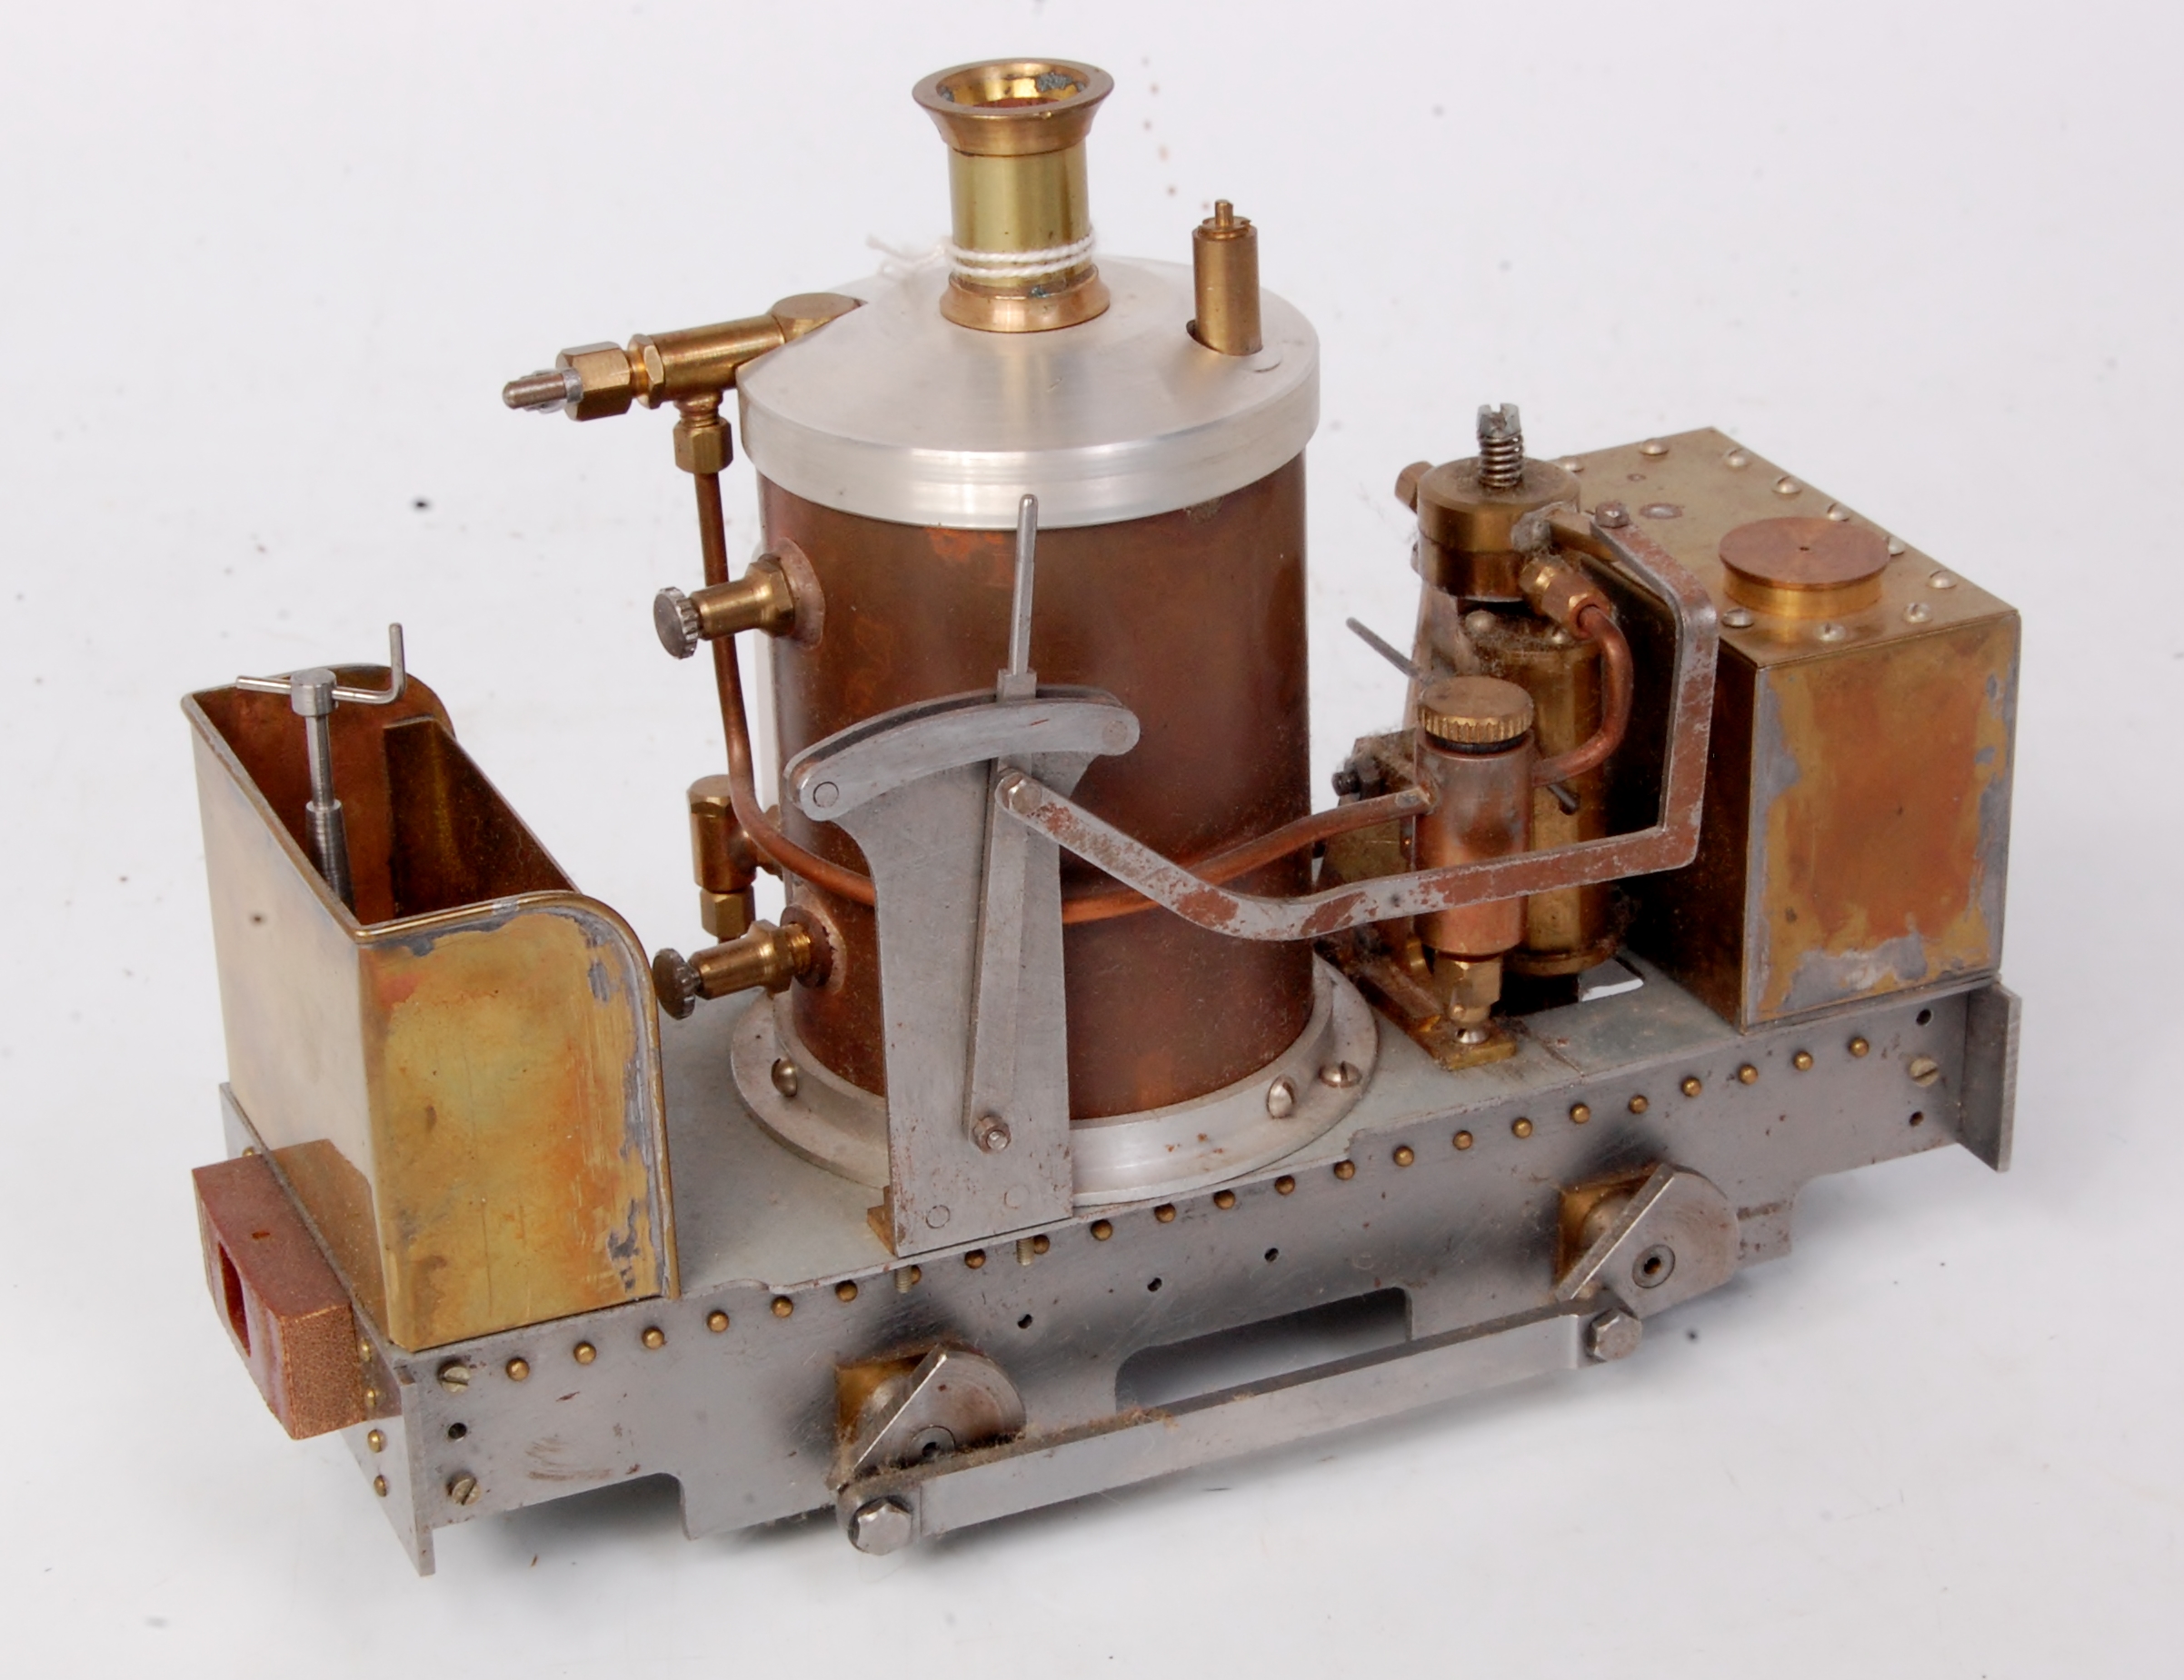 Scratch built 0 gauge narrow gauge 0-4-0 De Winton type locomotive with vertical copper boiler,